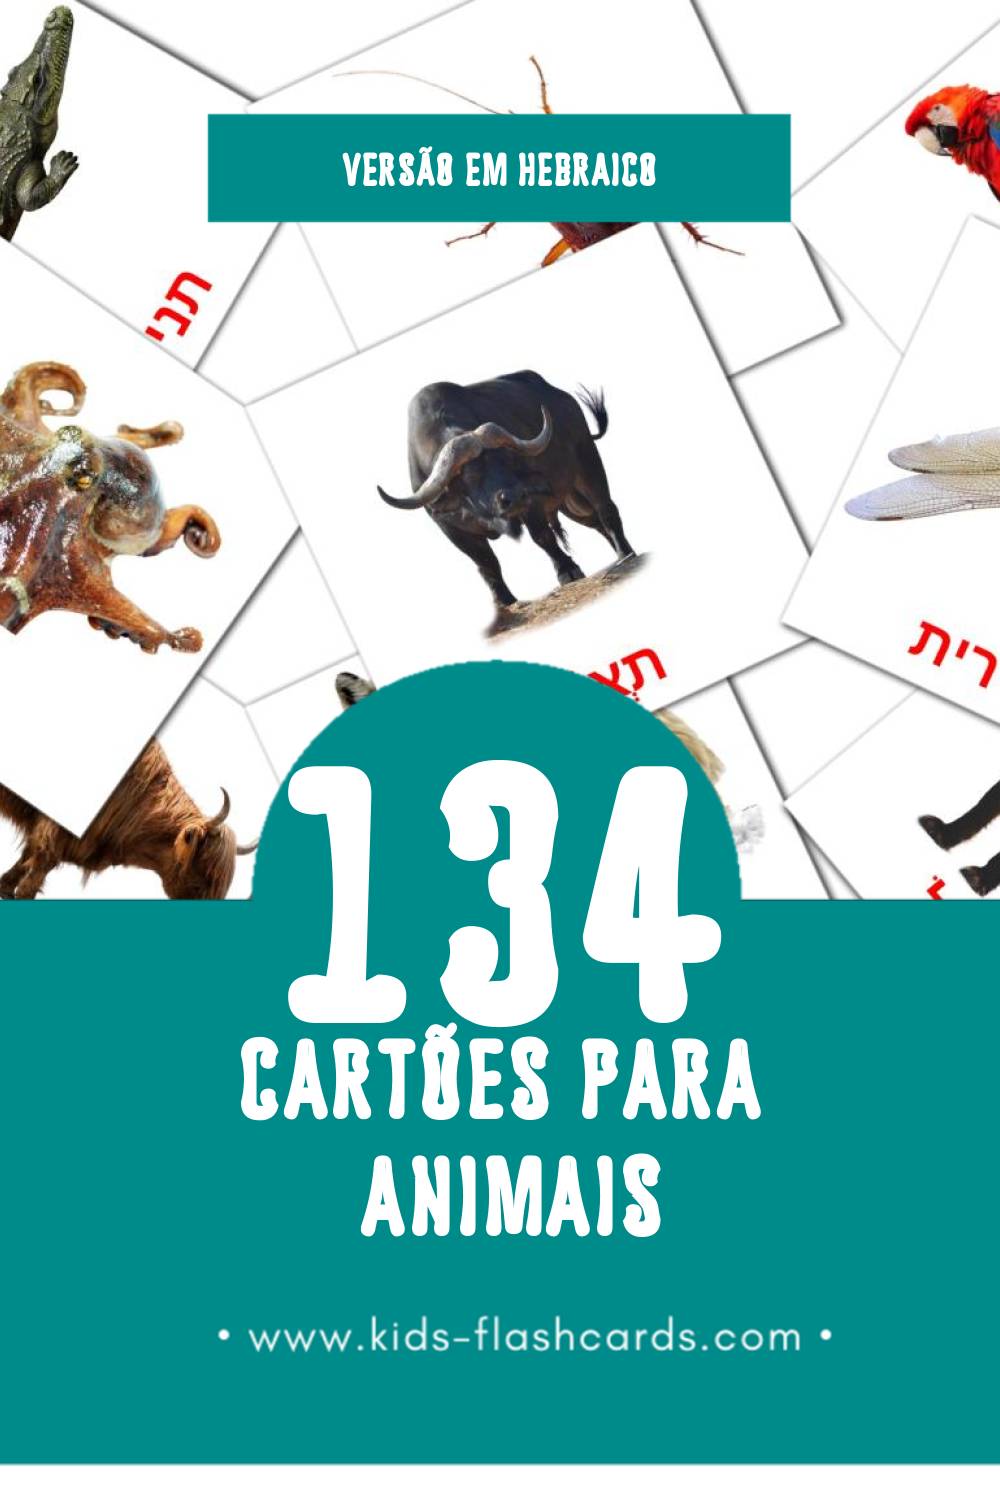 Flashcards de חיות Visuais para Toddlers (134 cartões em Hebraico)